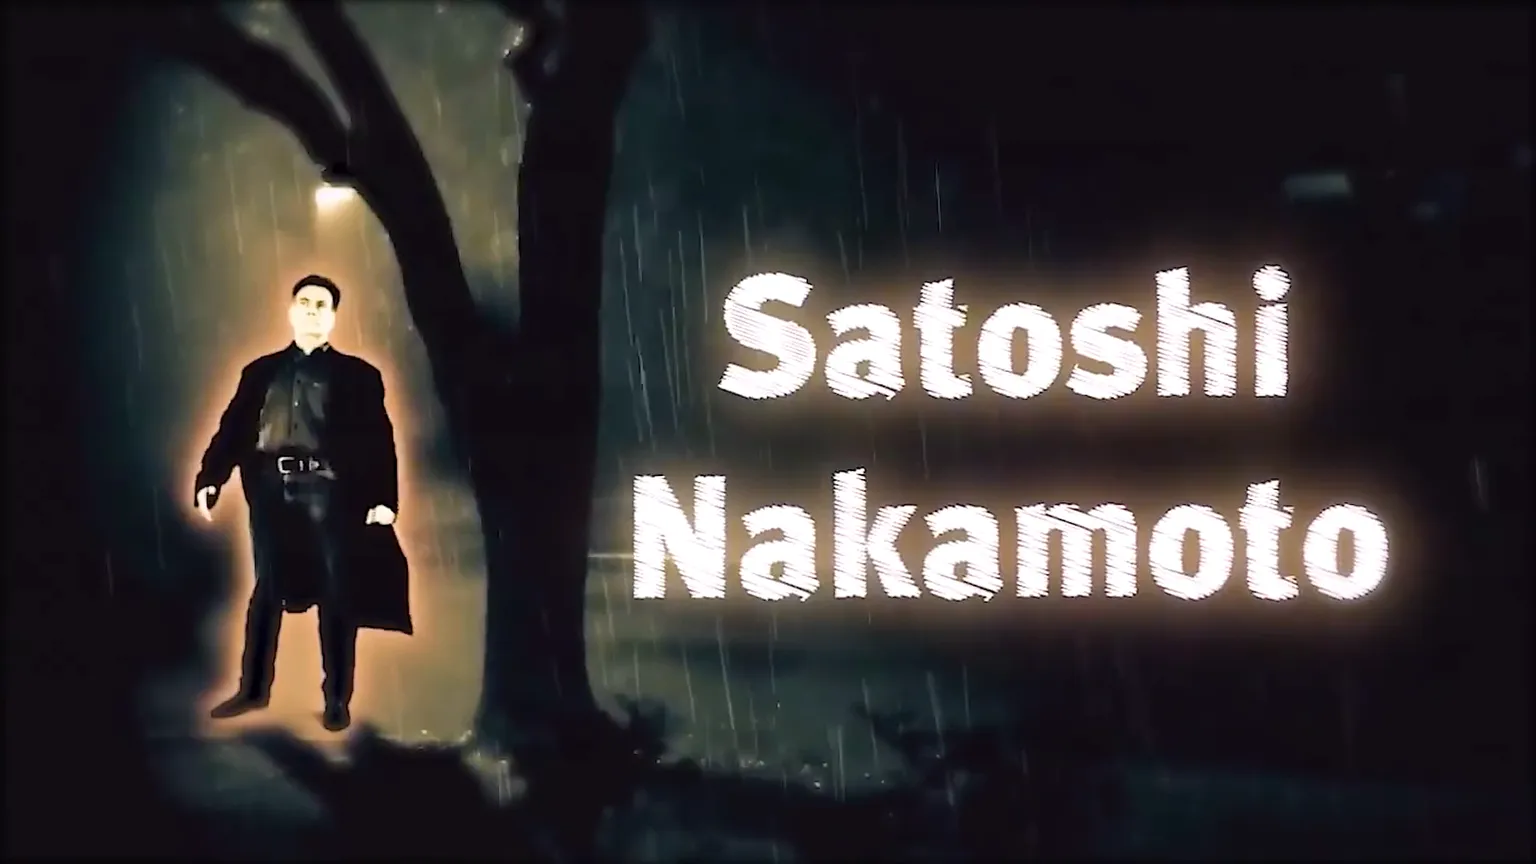 Caputura del Video de Edir Macedo, explicando quien es Satoshi Nakamoto y por qué creó Bitcoin anómimamente. Imagen: YouTube